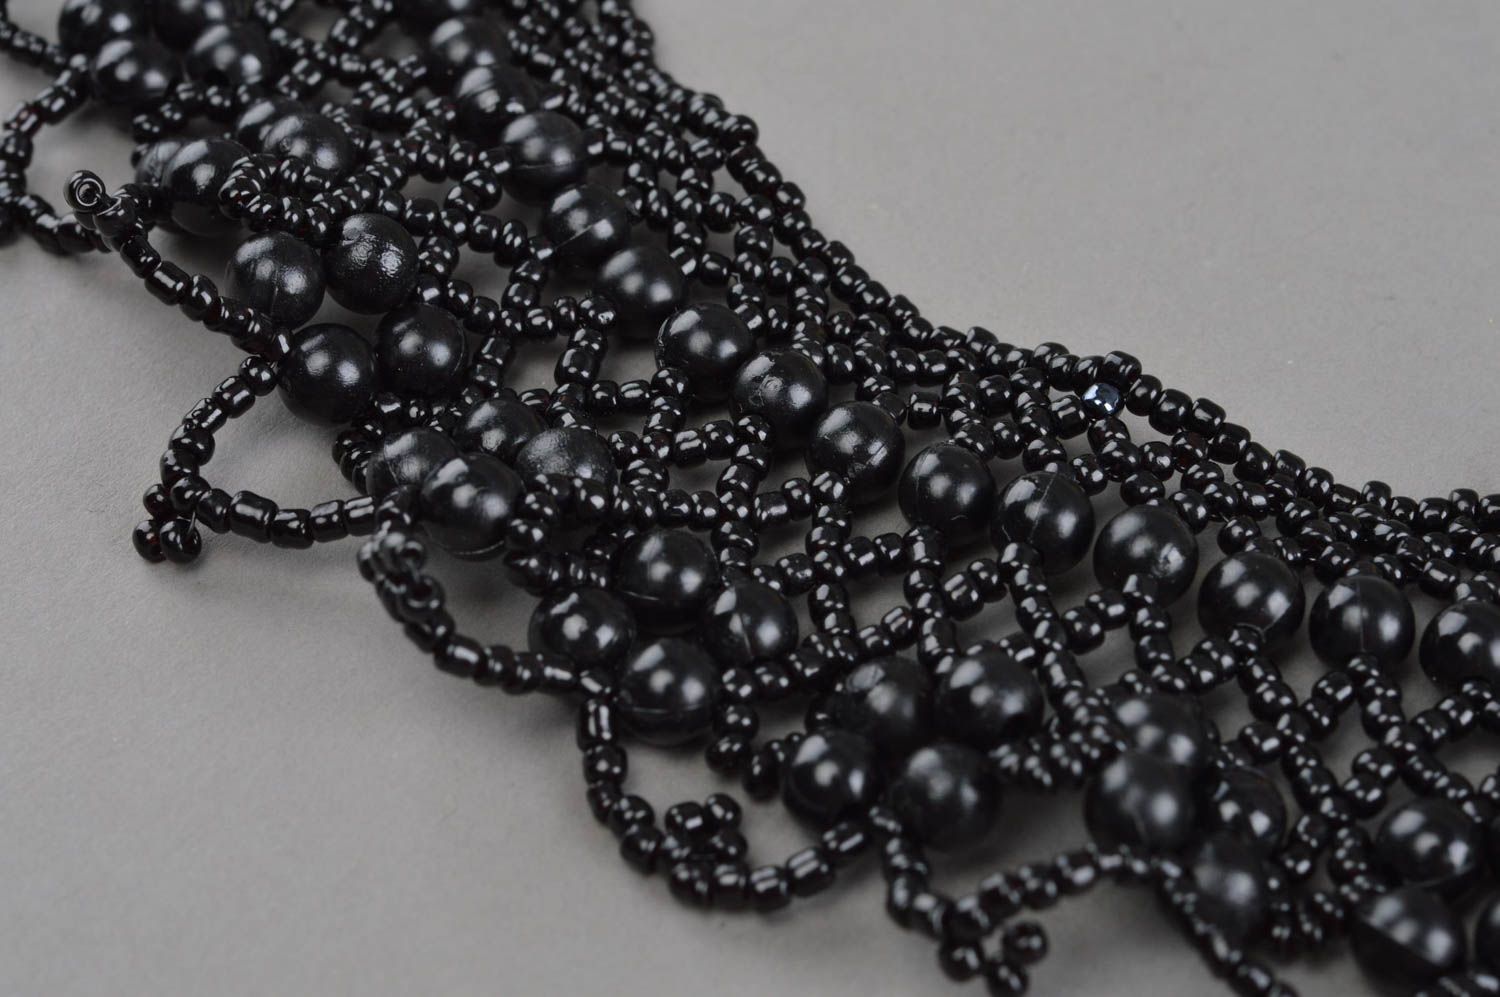 Ожерелье из бисера и бусин ручной работы черного цвета красивое ажурное  фото 5